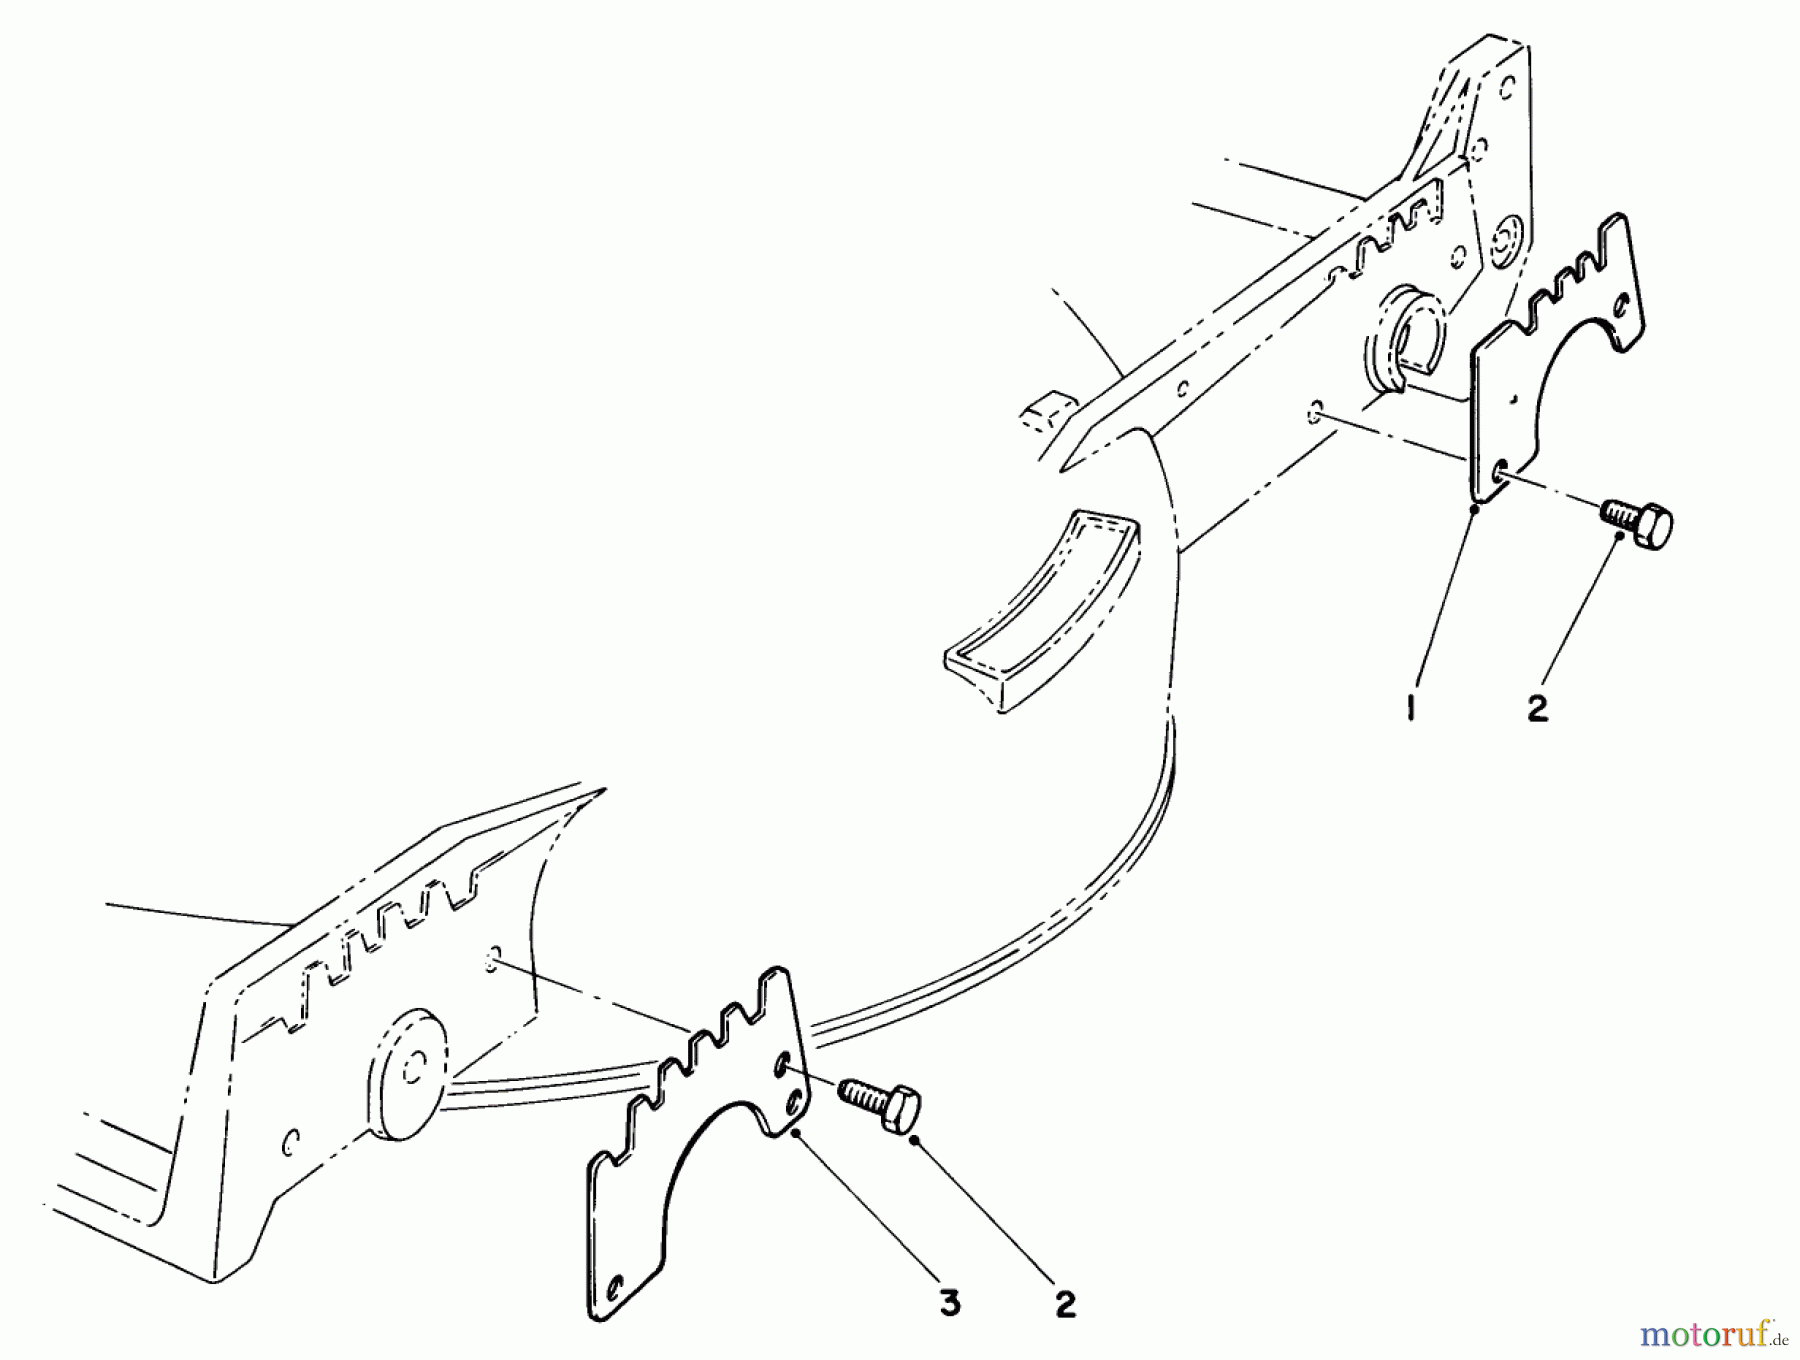  Toro Neu Mowers, Walk-Behind Seite 1 20715C - Toro Lawnmower, 1985 (5000001-5999999) WEAR PLATE KIT NO. 49-4080 (OPTIONAL)